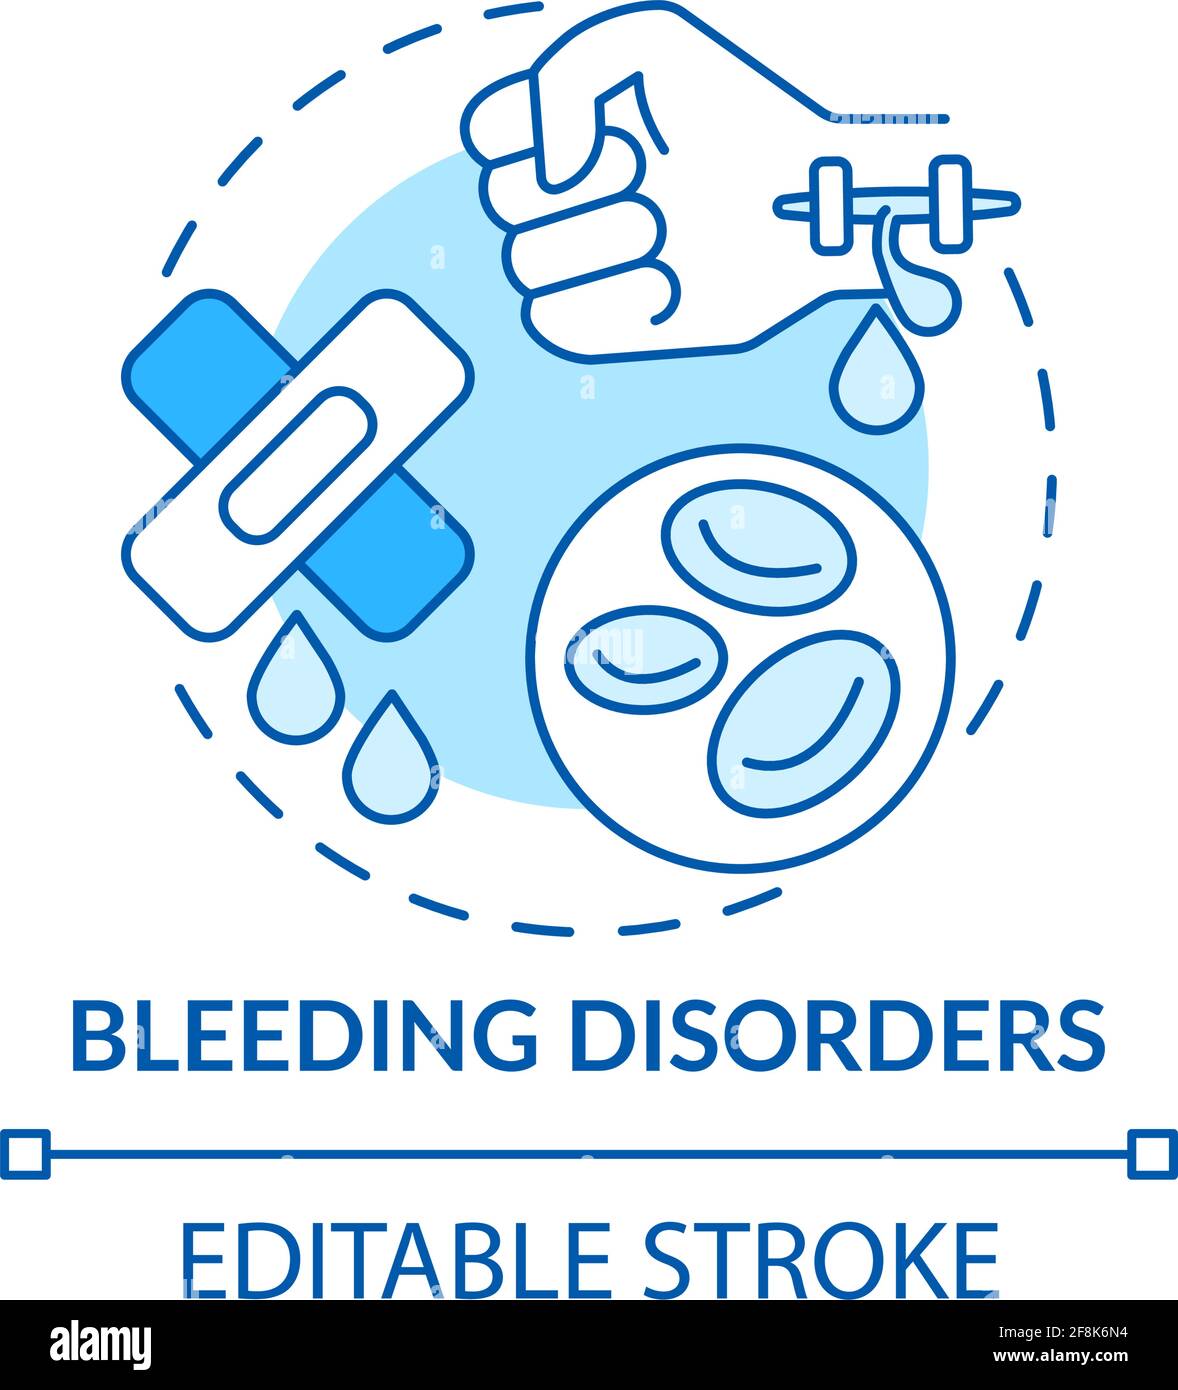 Bleeding disorders concept icon Stock Vector